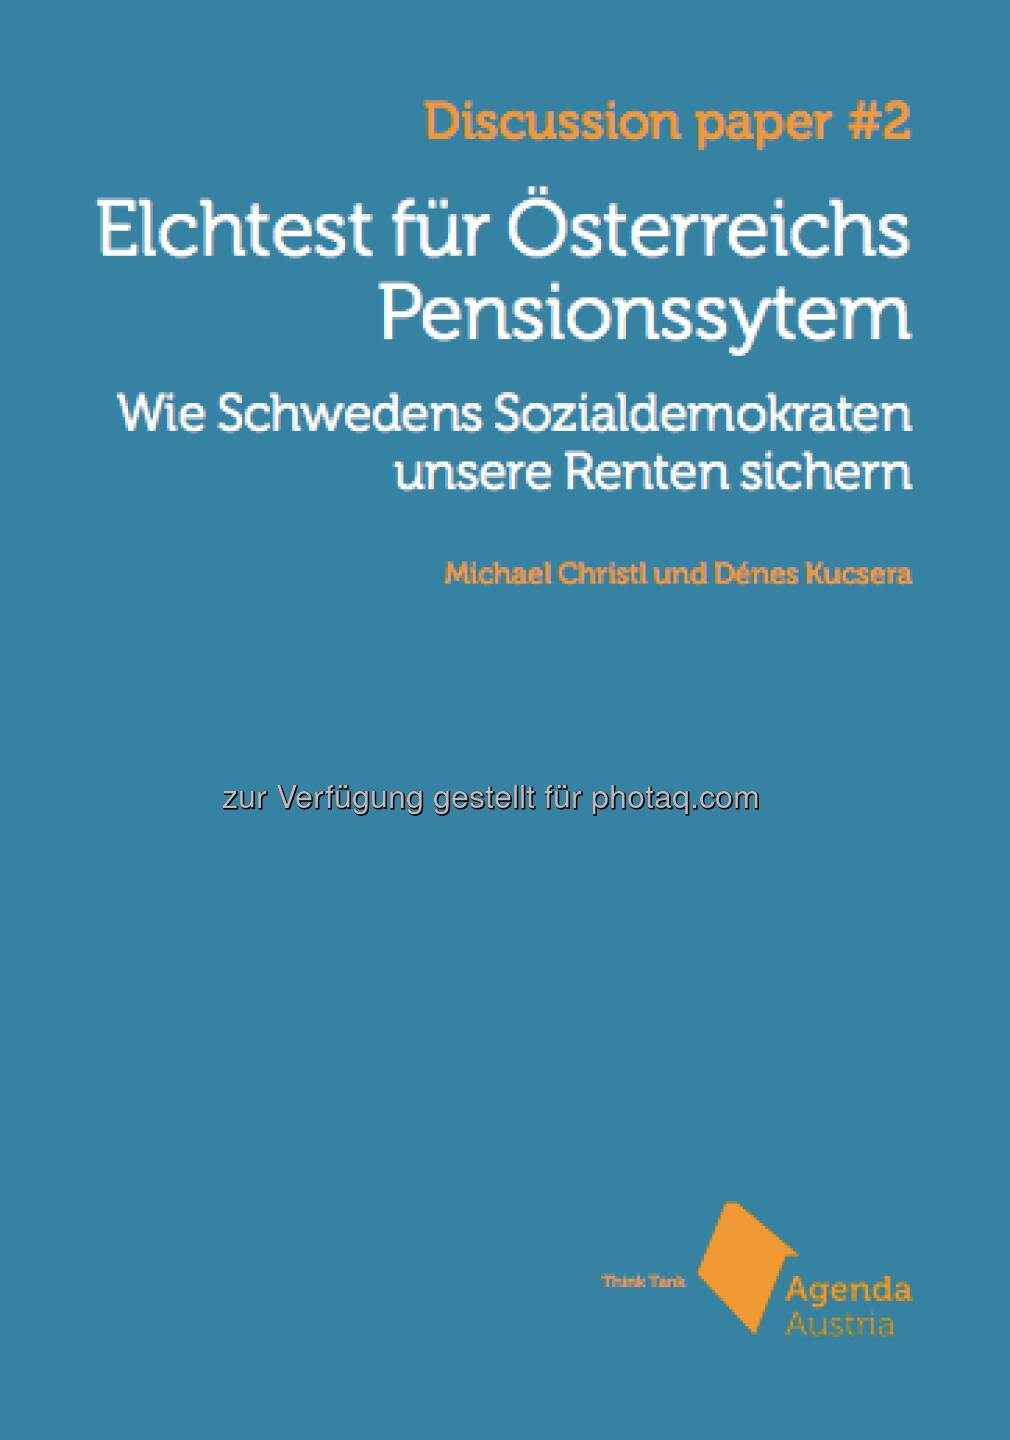 Hier steht unsere aktuellste Studie Elchtest für Österreichs Pensionssystem kostenlos zur Verfügung: http://www.agenda-austria.at/inhalte/publikationen/  Source: http://twitter.com/AgendaAustria